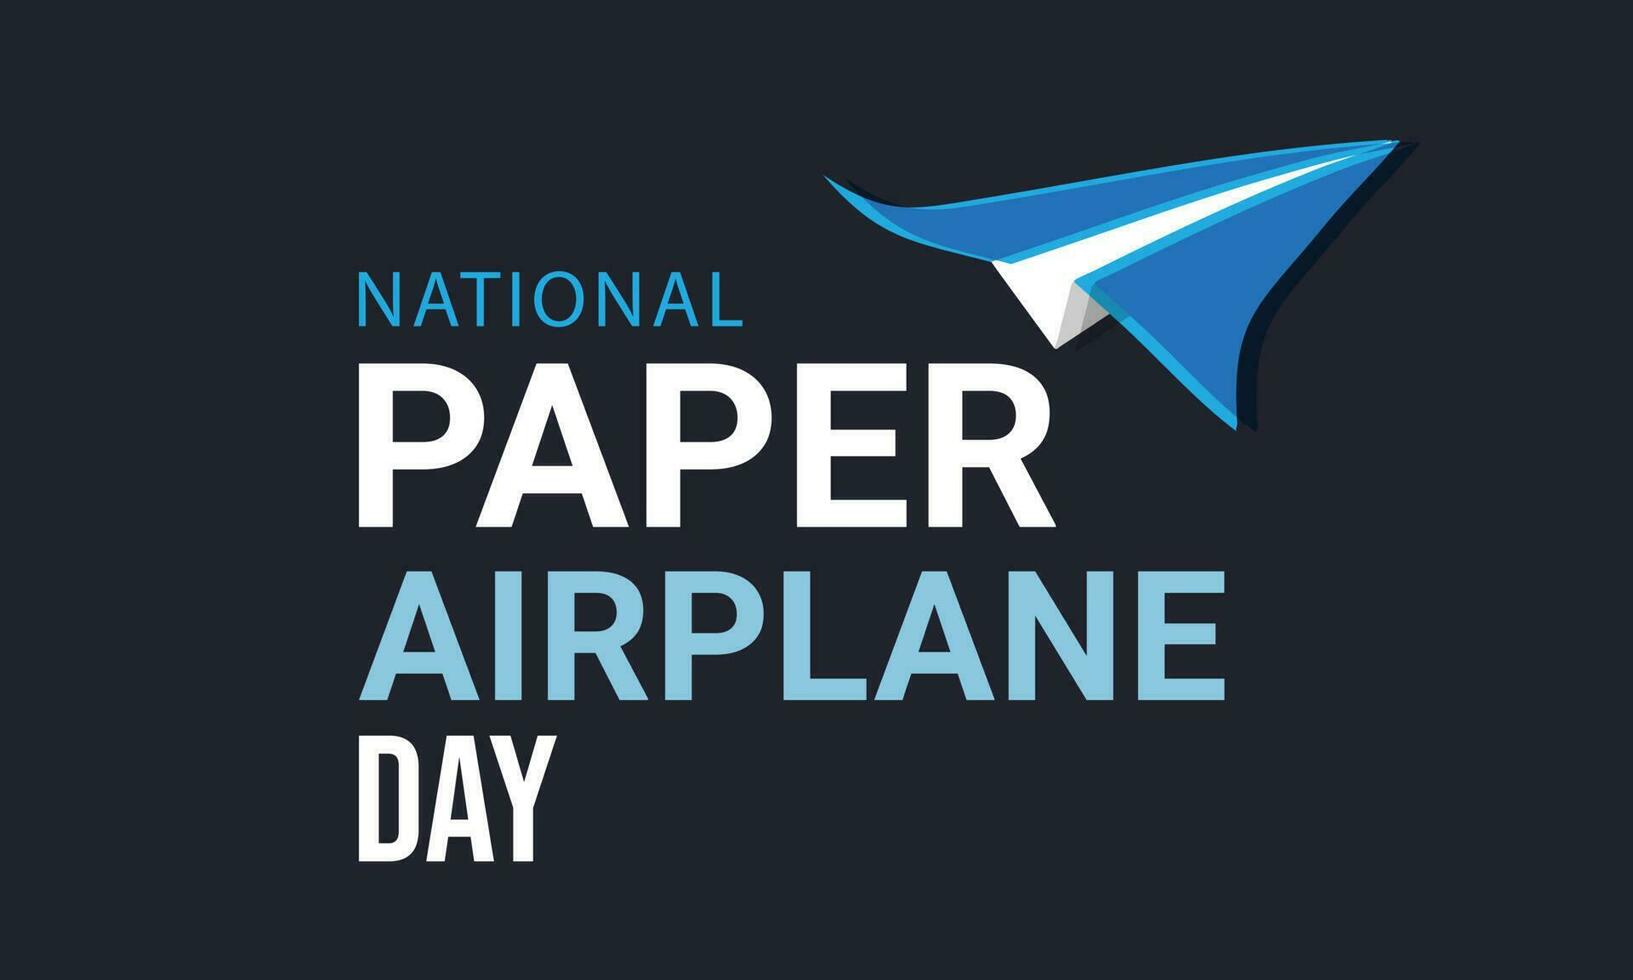 National Papier Flugzeug Tag. Vorlage zum Hintergrund, Banner, Karte, Poster. Vektor Illustration.